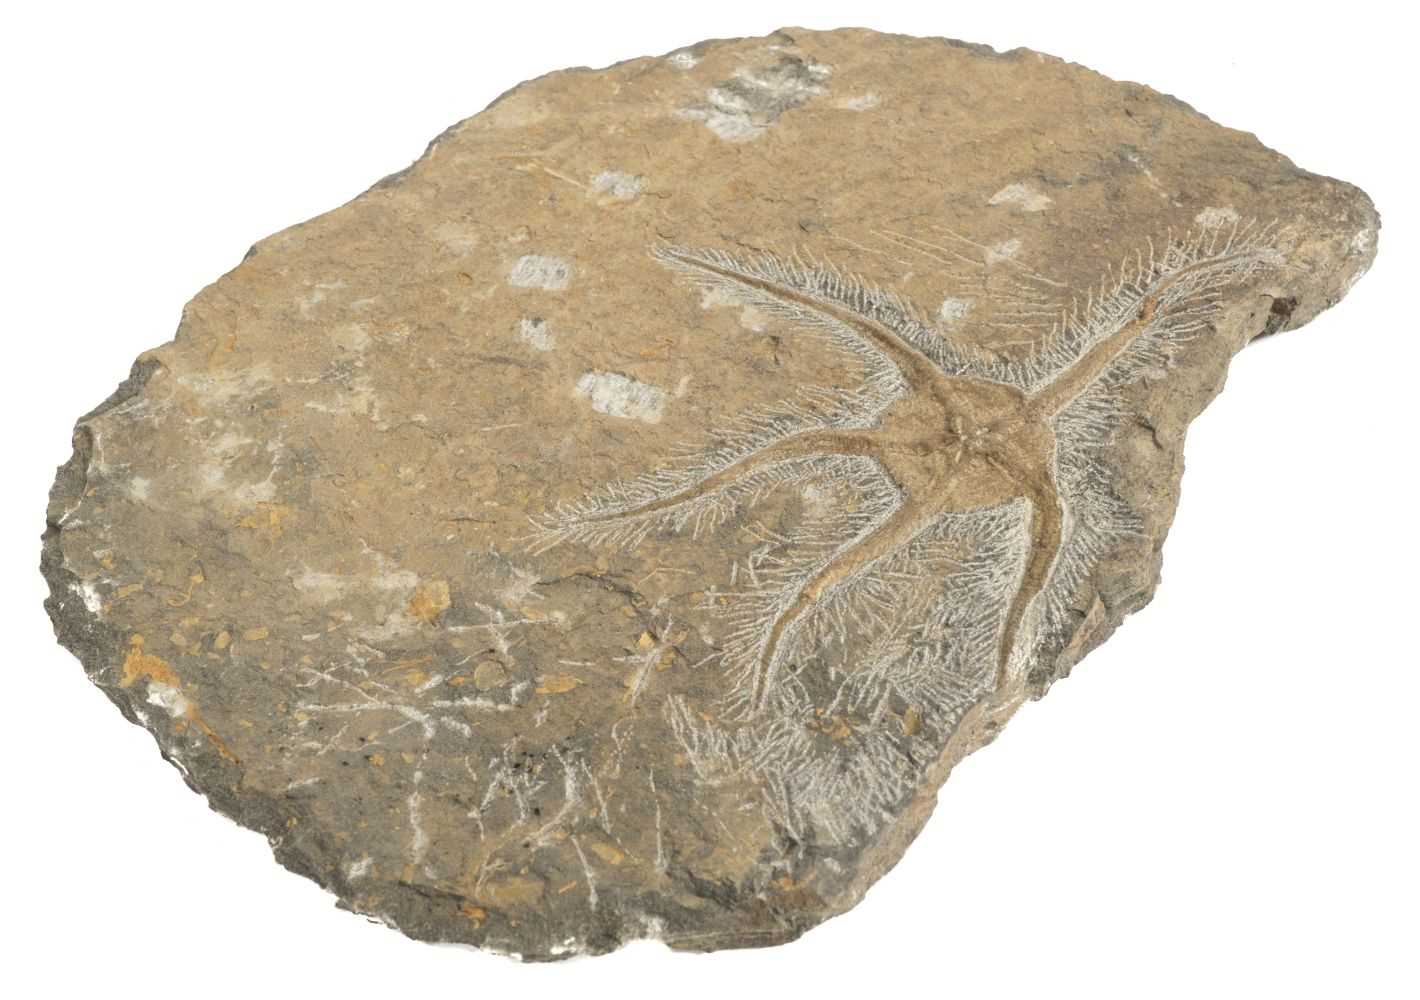 Lot 327 - Fossil Starfish - Brittlstar.